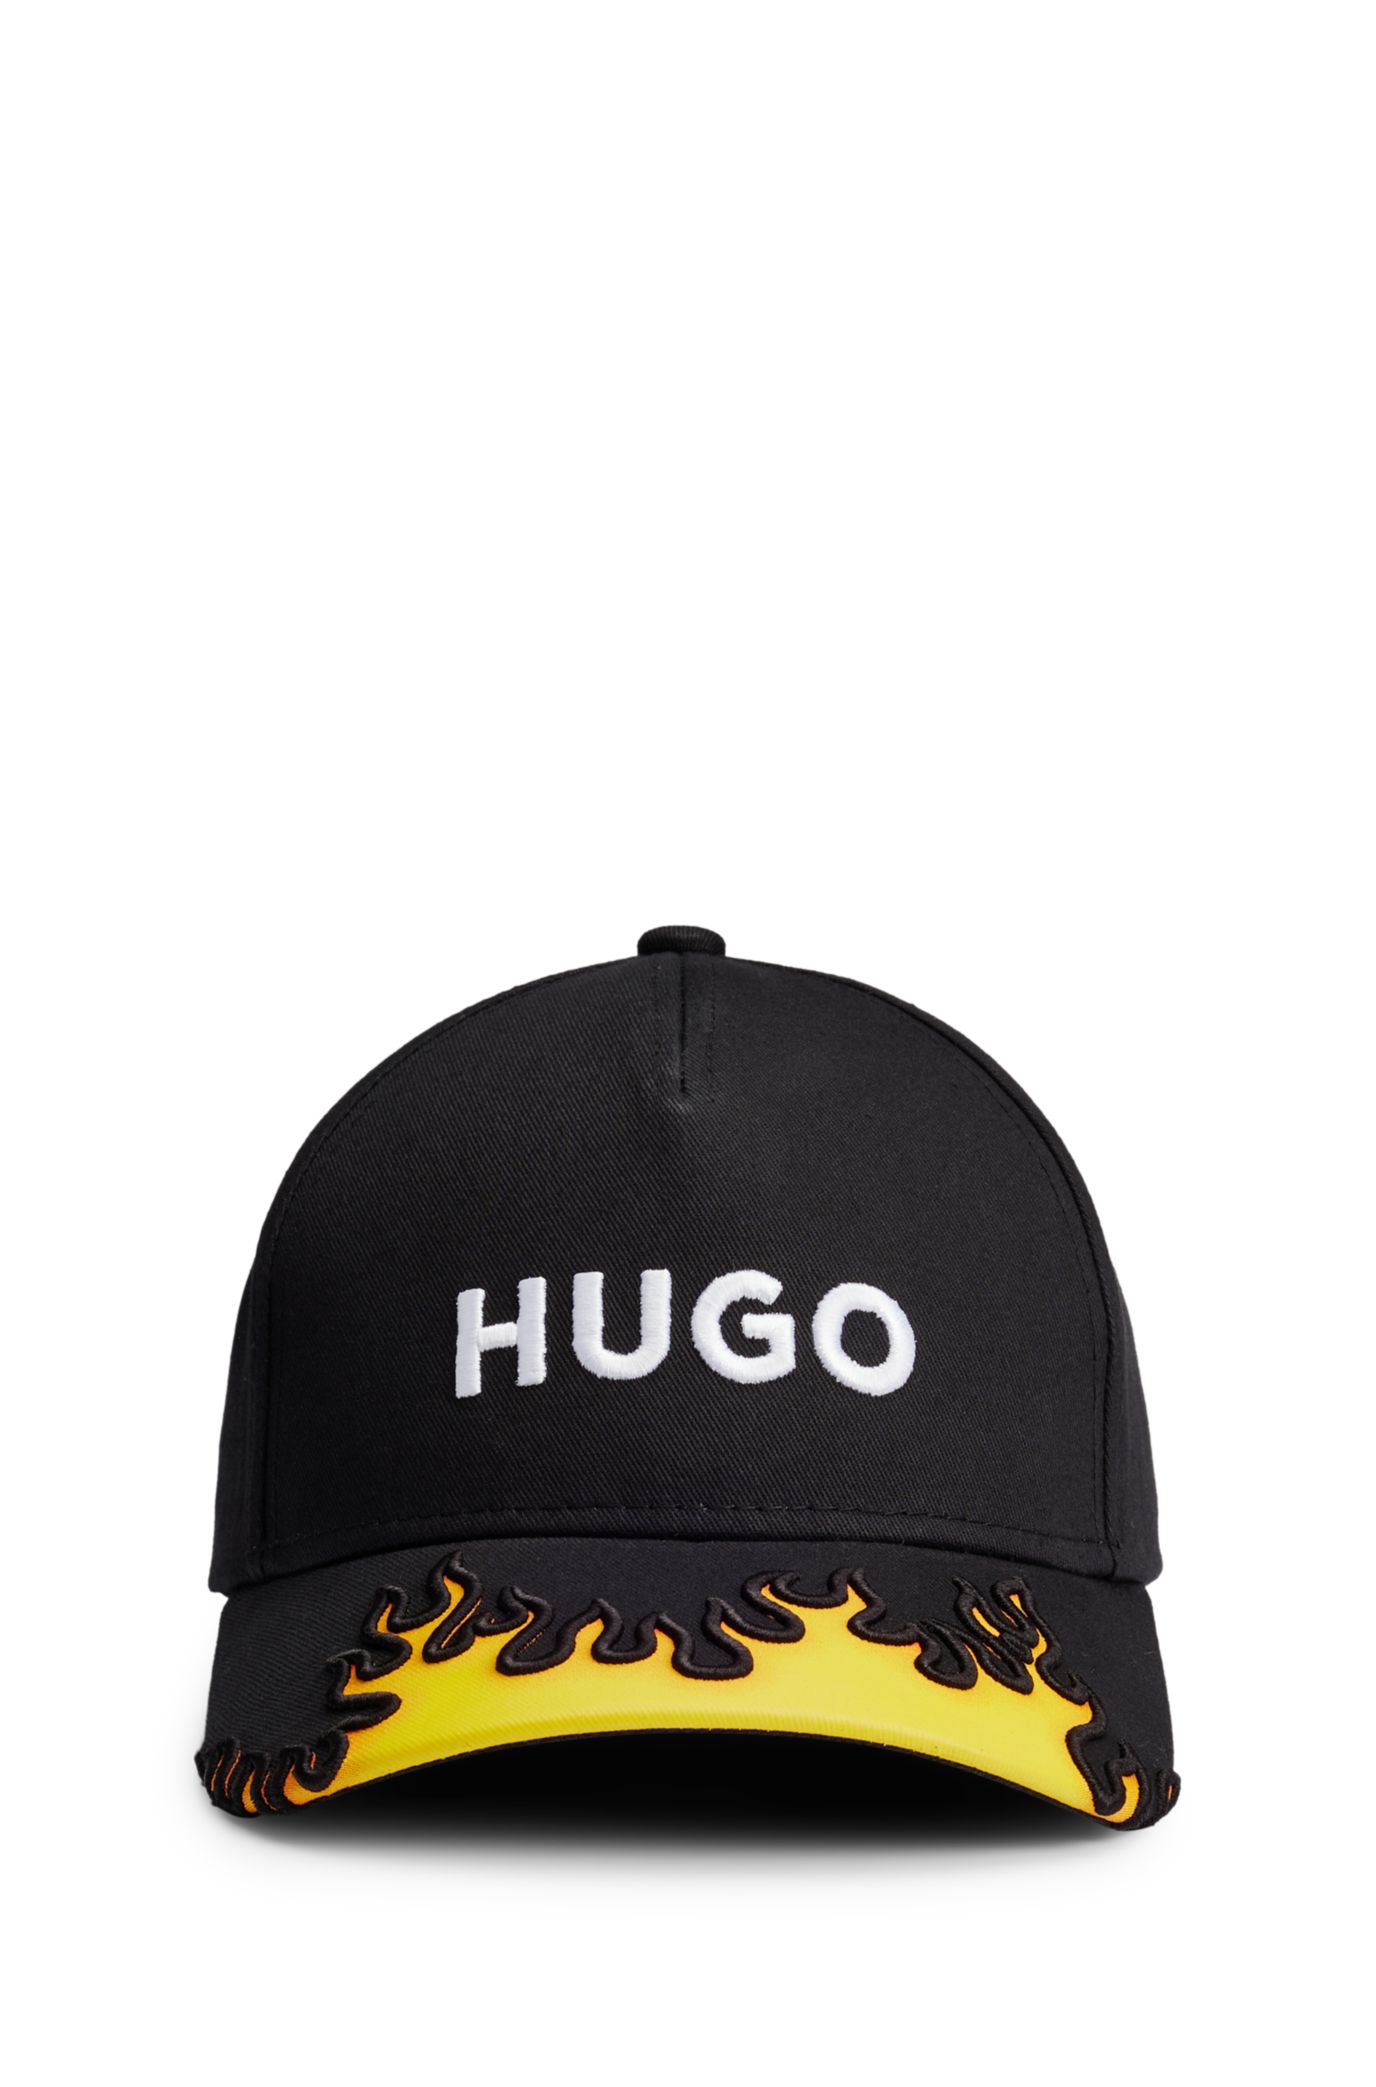 Hugo Black Cotton Twill Cap